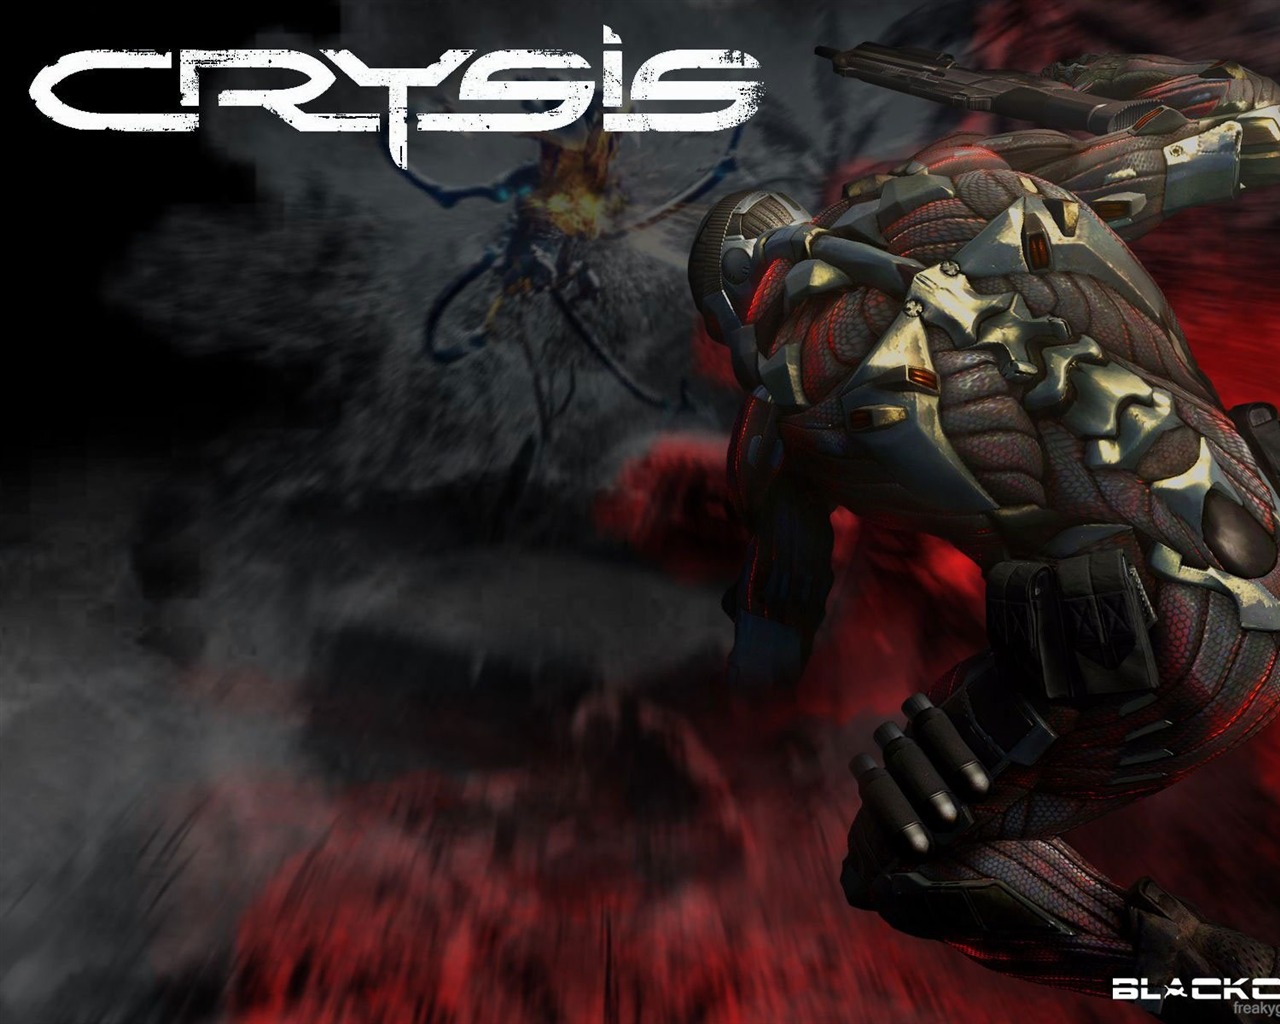  Crysisの壁紙(2) #2 - 1280x1024